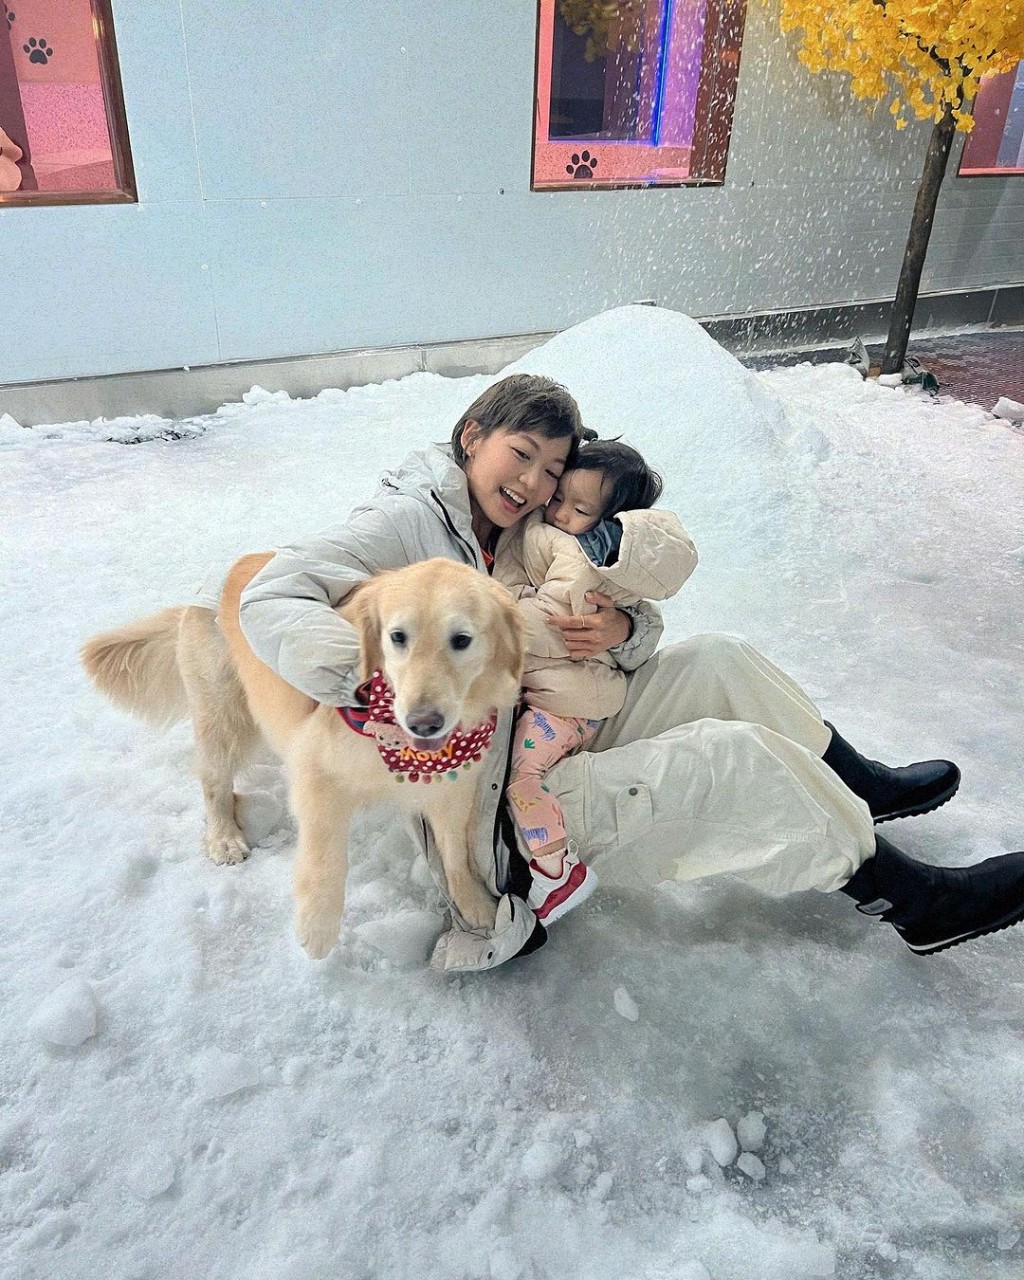 昨晚梁诺妍分享与囡囡Sir Face和爱犬Molly去玩雪的照片。